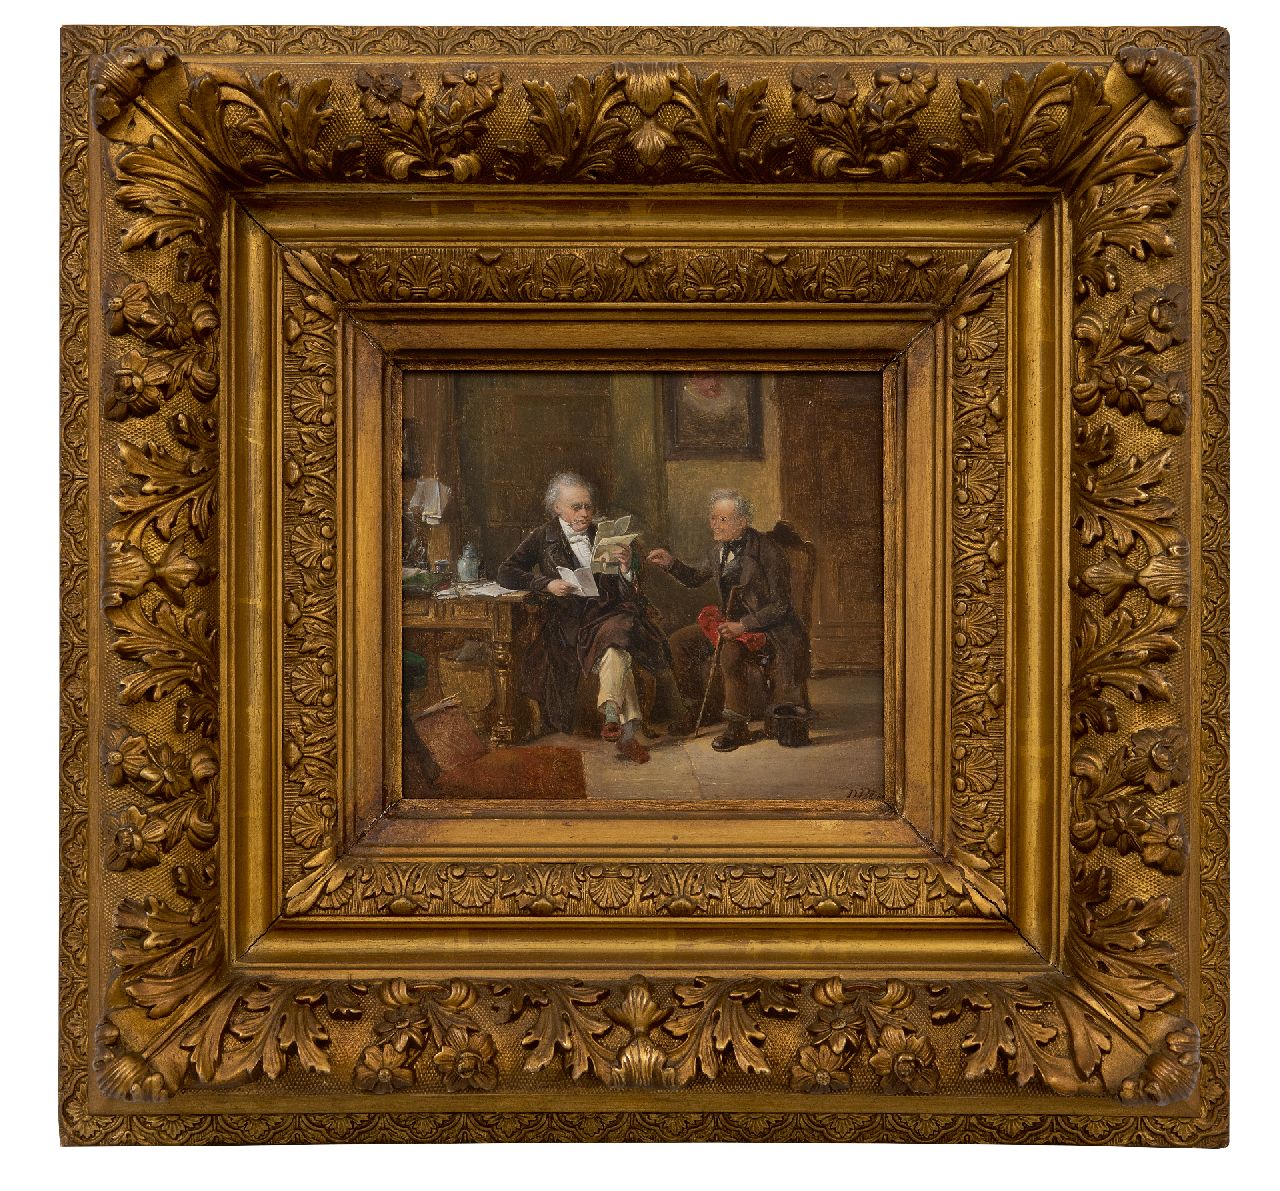 Bles D.J.  | David Joseph Bles | Schilderijen te koop aangeboden | Bij de notaris, olieverf op paneel 17,7 x 19,8 cm, gesigneerd rechtsonder